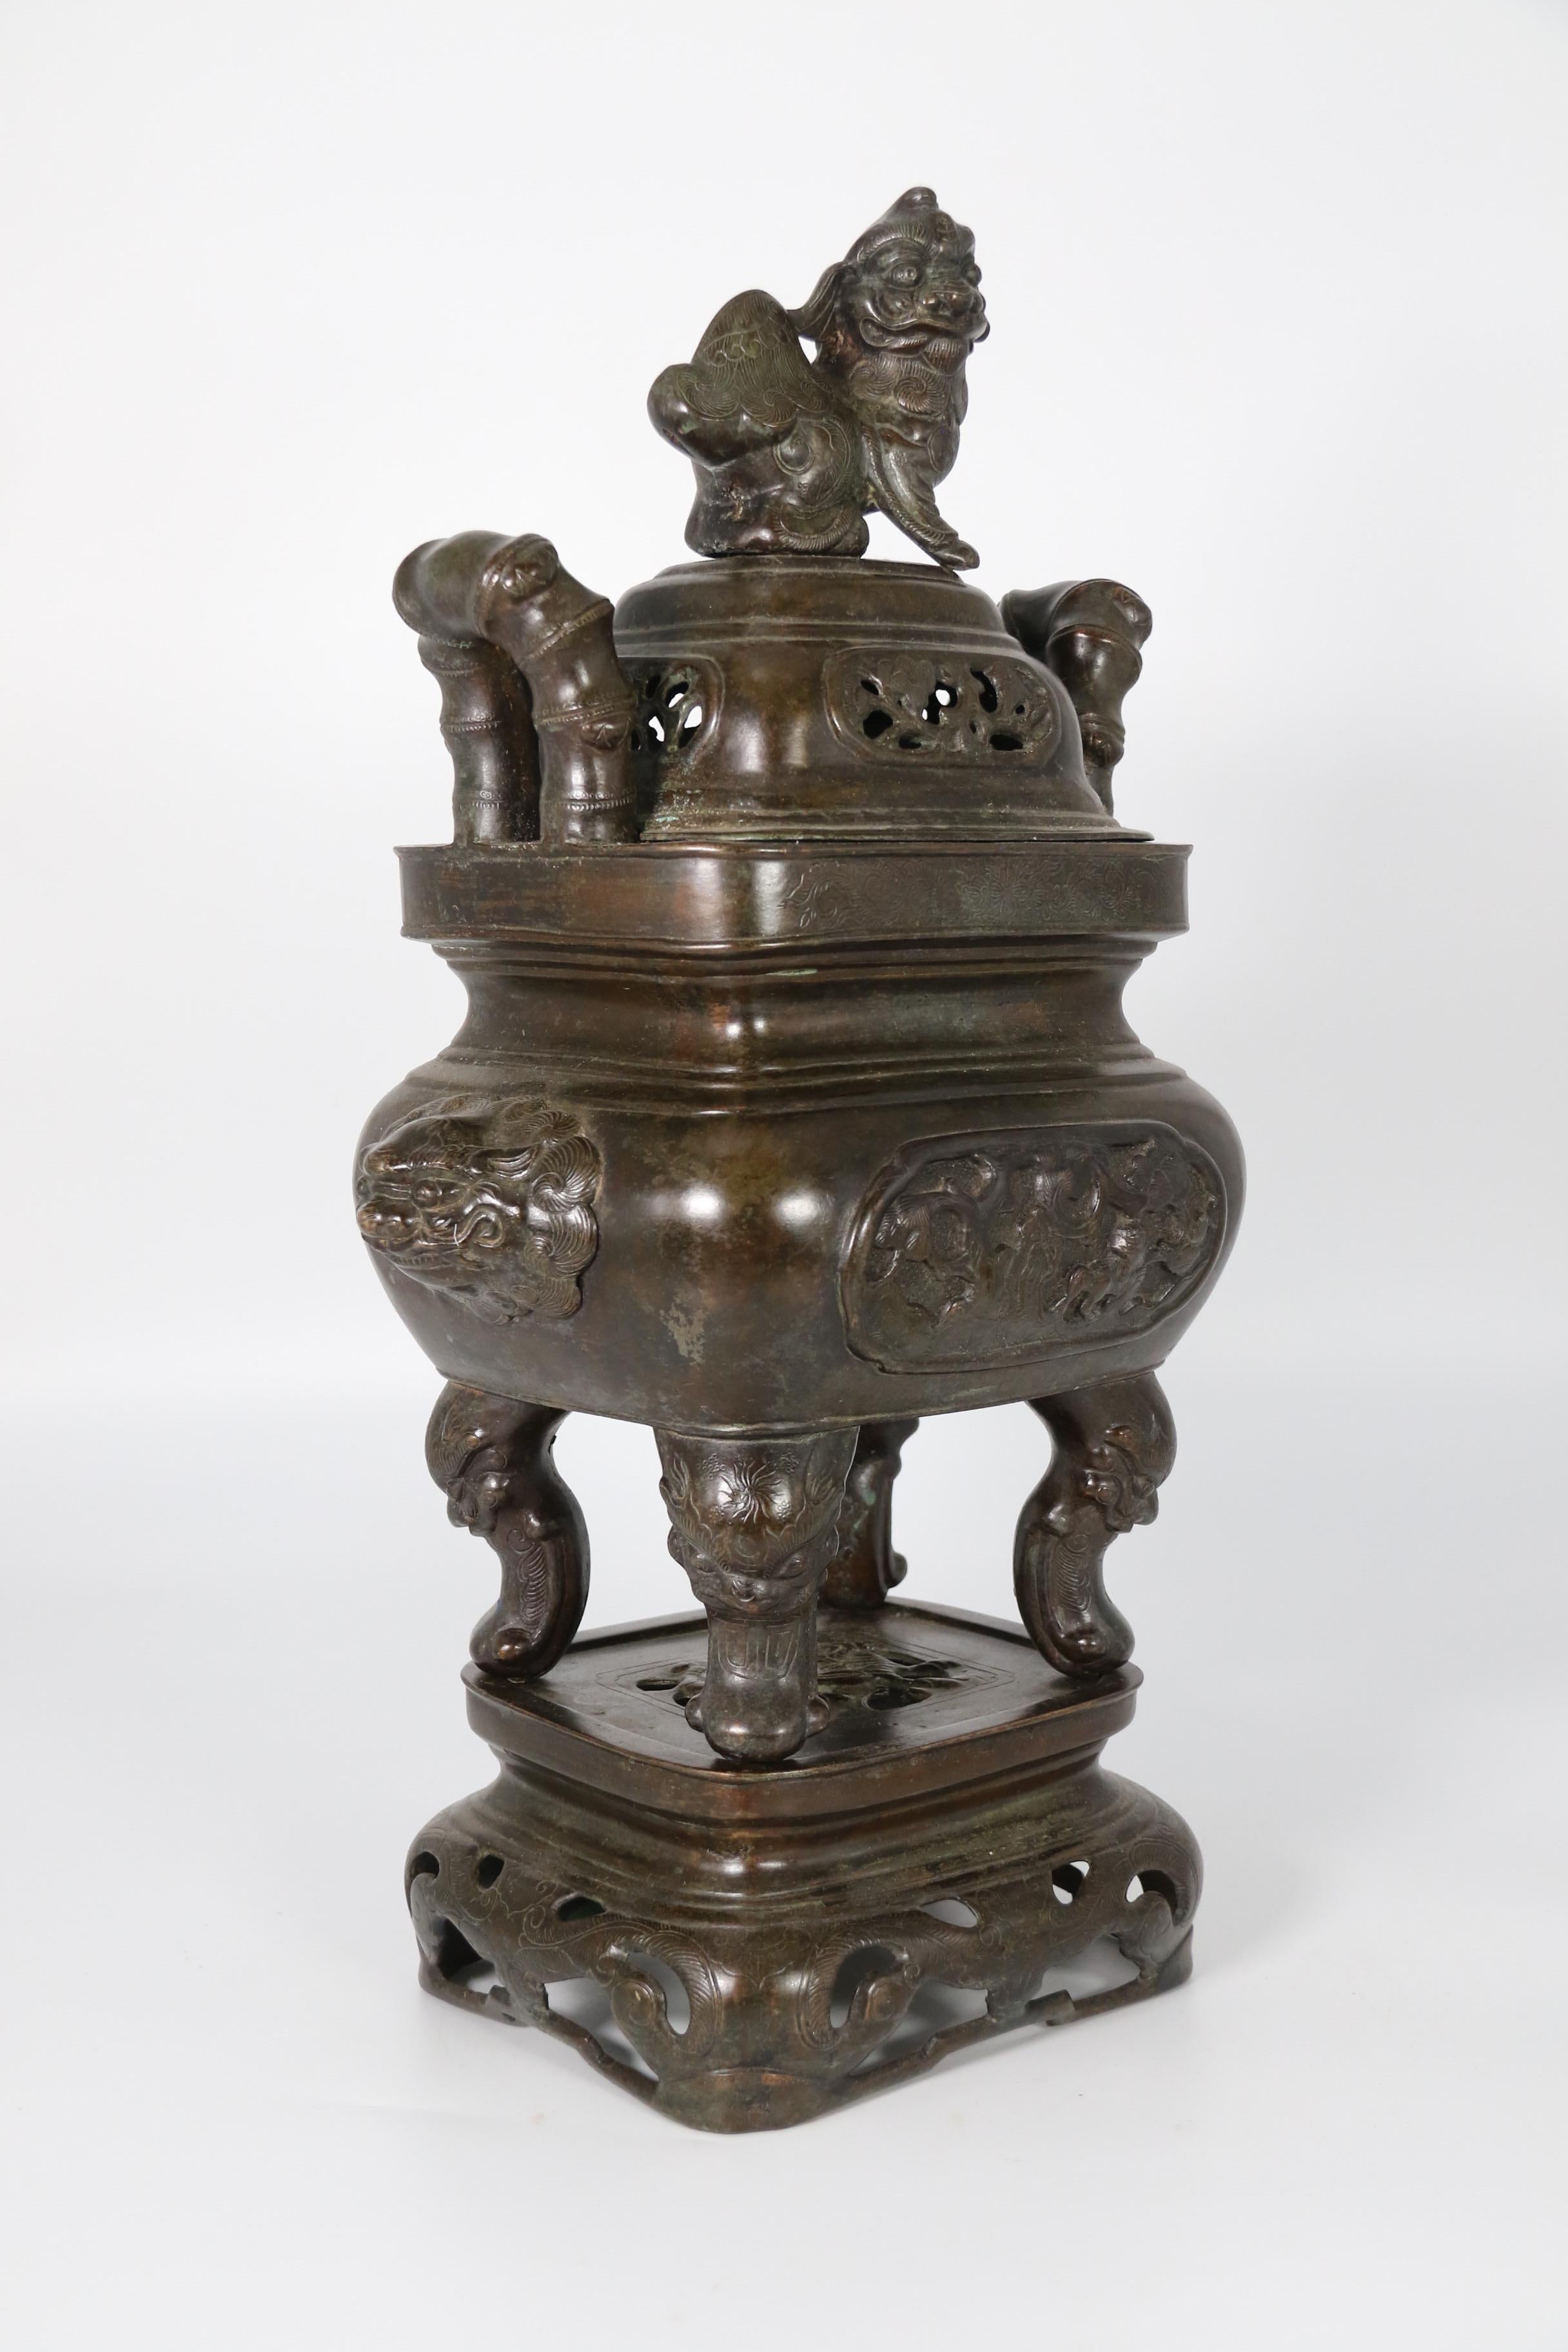 Ce grand encensoir chinois en bronze date d'environ 1860. Il est composé de trois parties : le support, le récipient et le couvercle. Le couvercle est orné de panneaux décoratifs percés de pins et d'un imposant fleuron en forme de lion